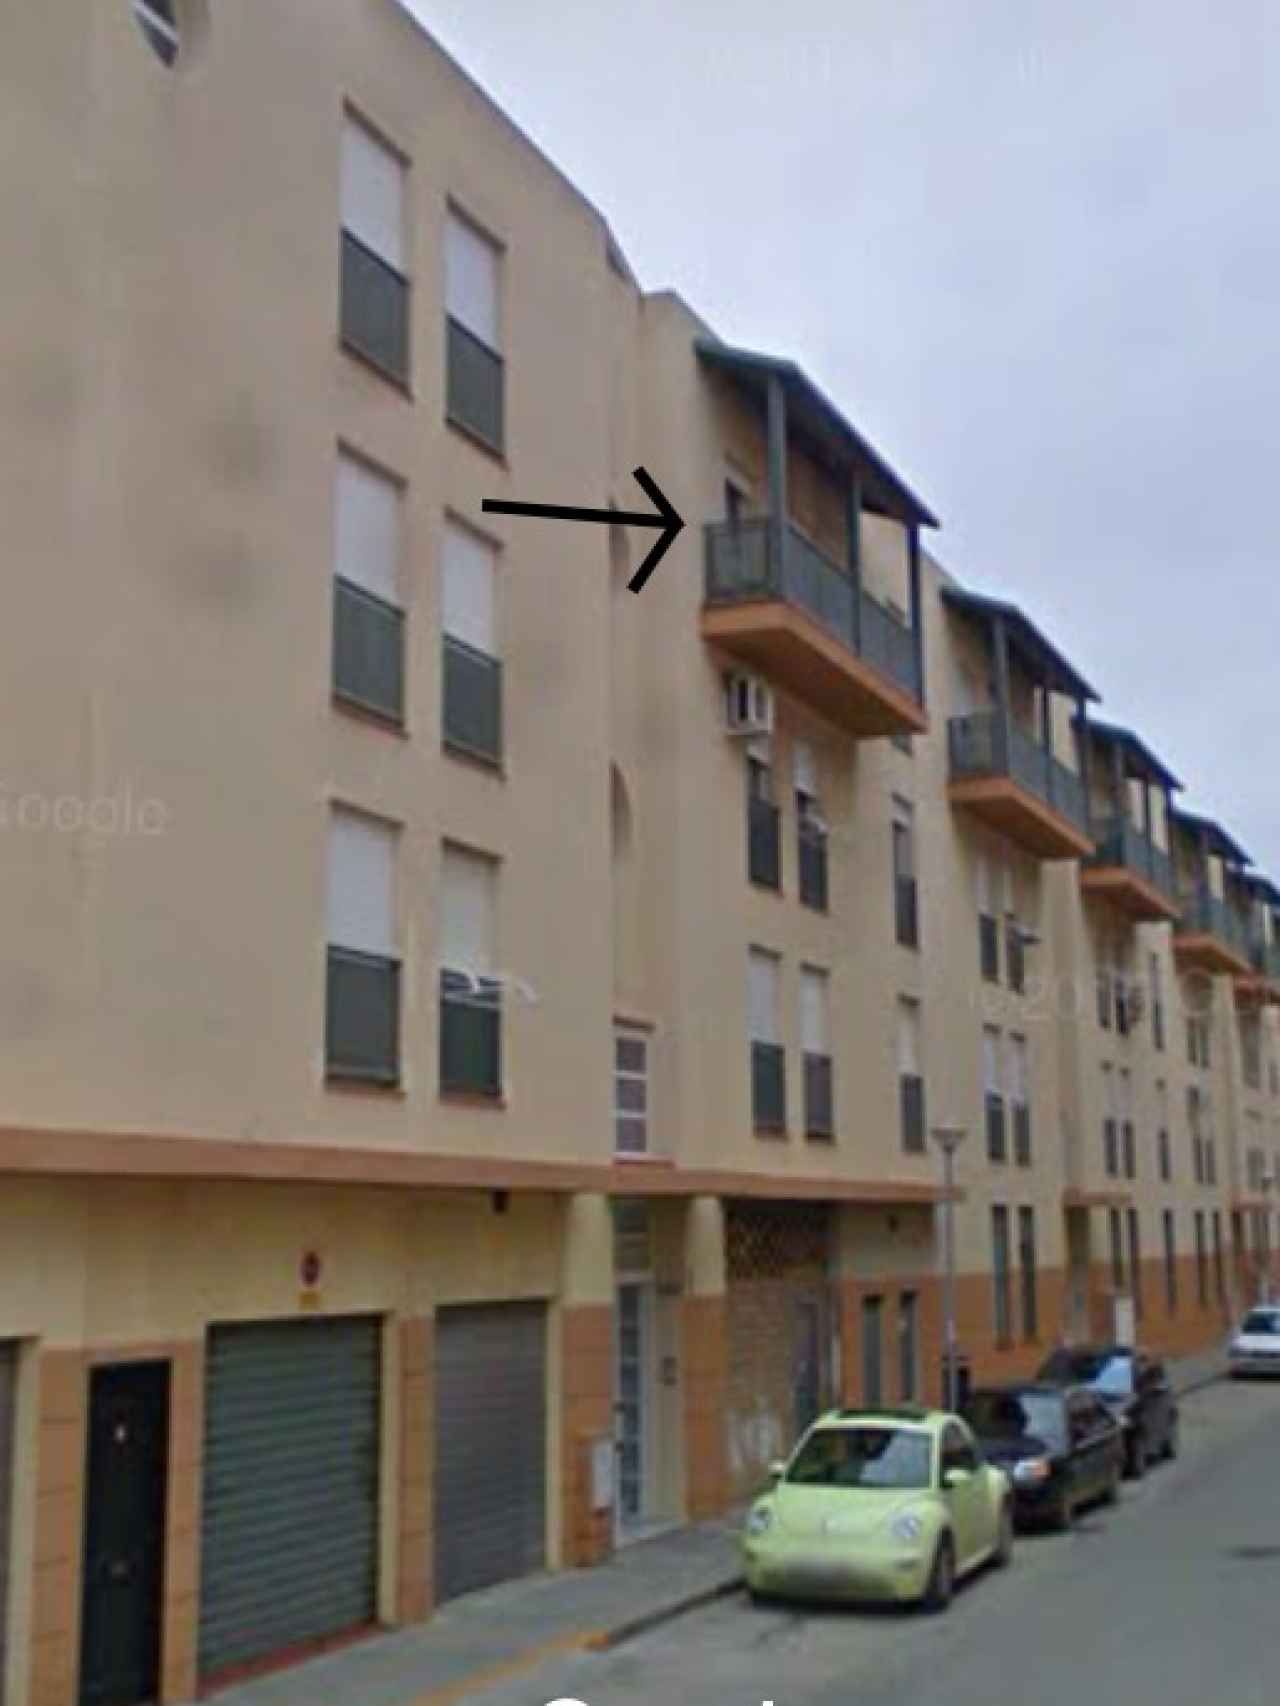 La niña cayó al vacío desde una tercera planta de este edificio en la calle Marisma de Puerto Real (Cádiz).